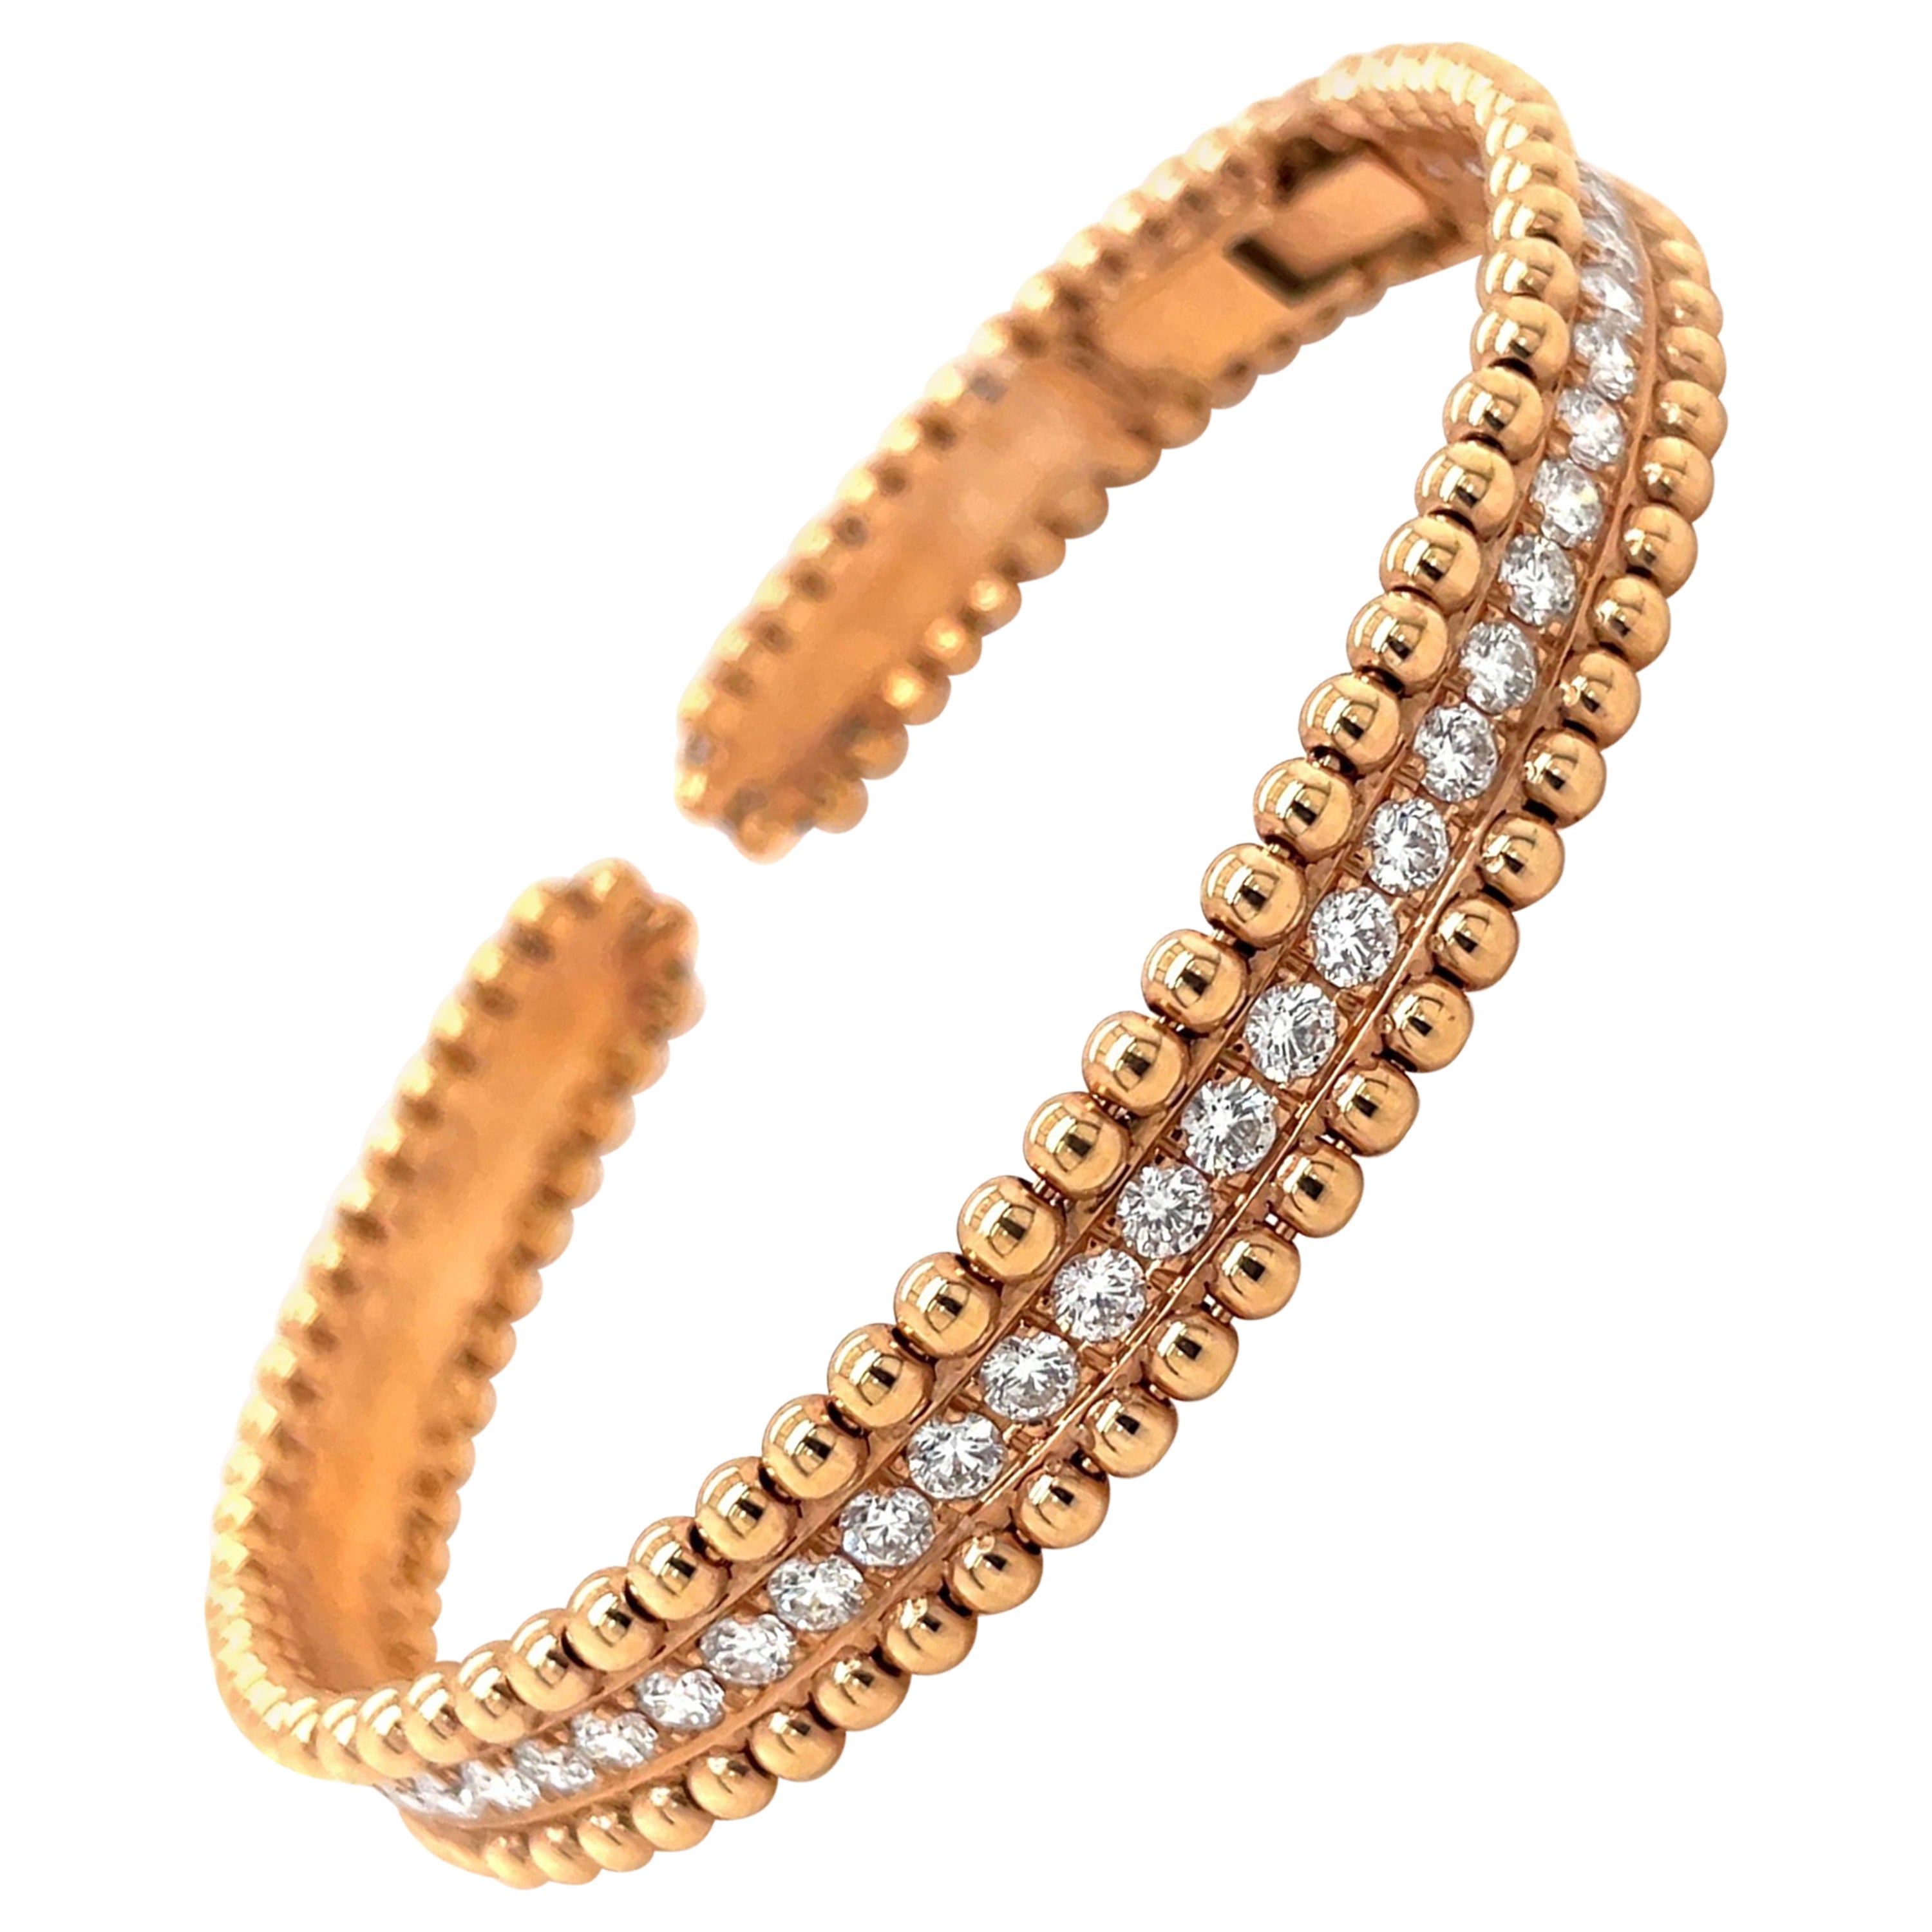 Bracelet en or rose 18 carats avec diamants 1,85 carat et bord perlé